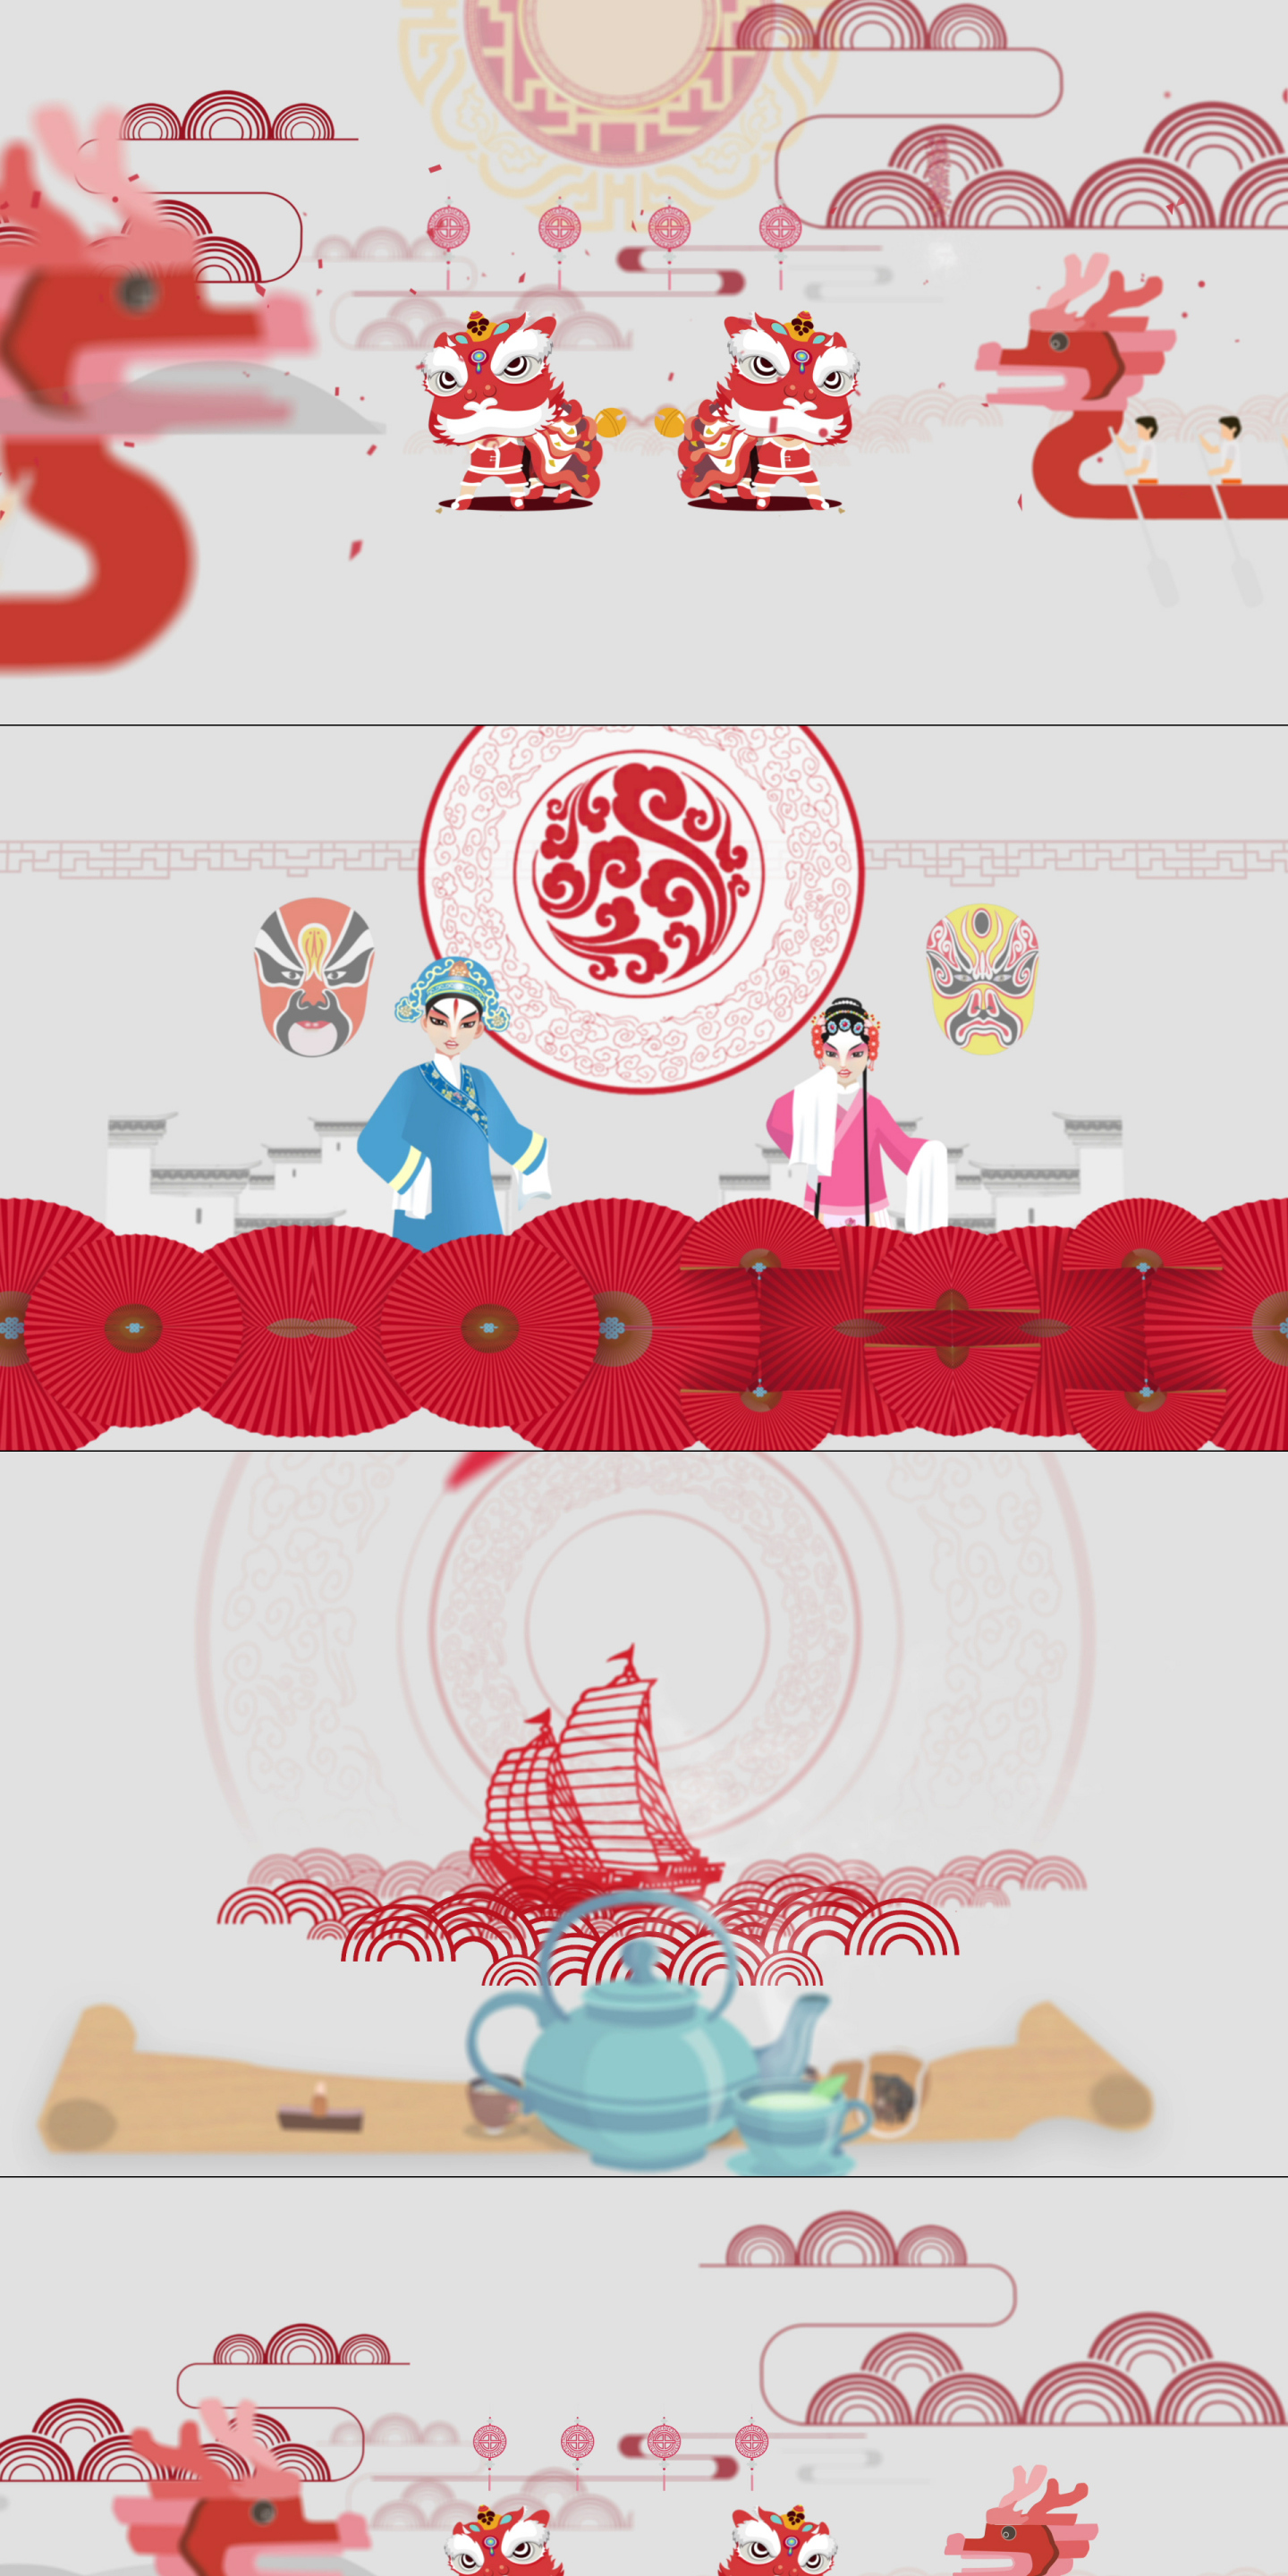 中国传统文化剪纸戏曲驴皮影皮影戏岭南文化